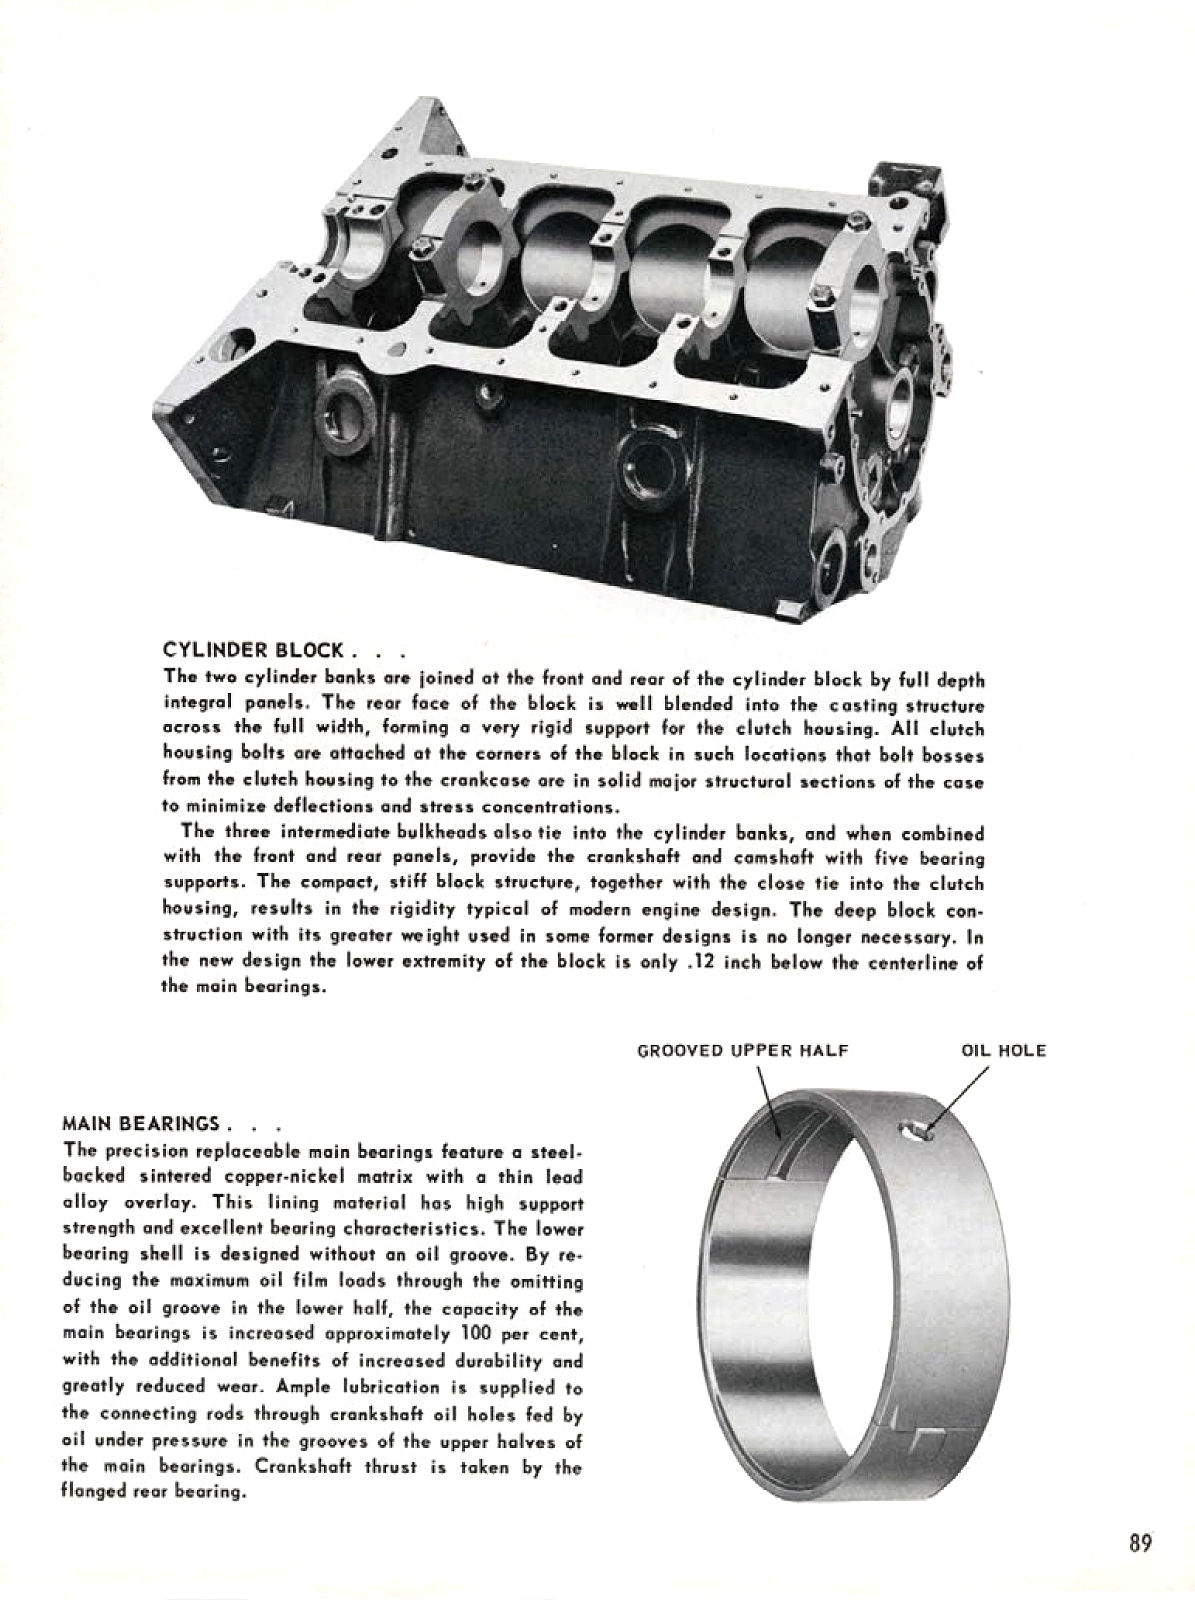 1955_Chevrolet_Truck_Engineering_Features-089